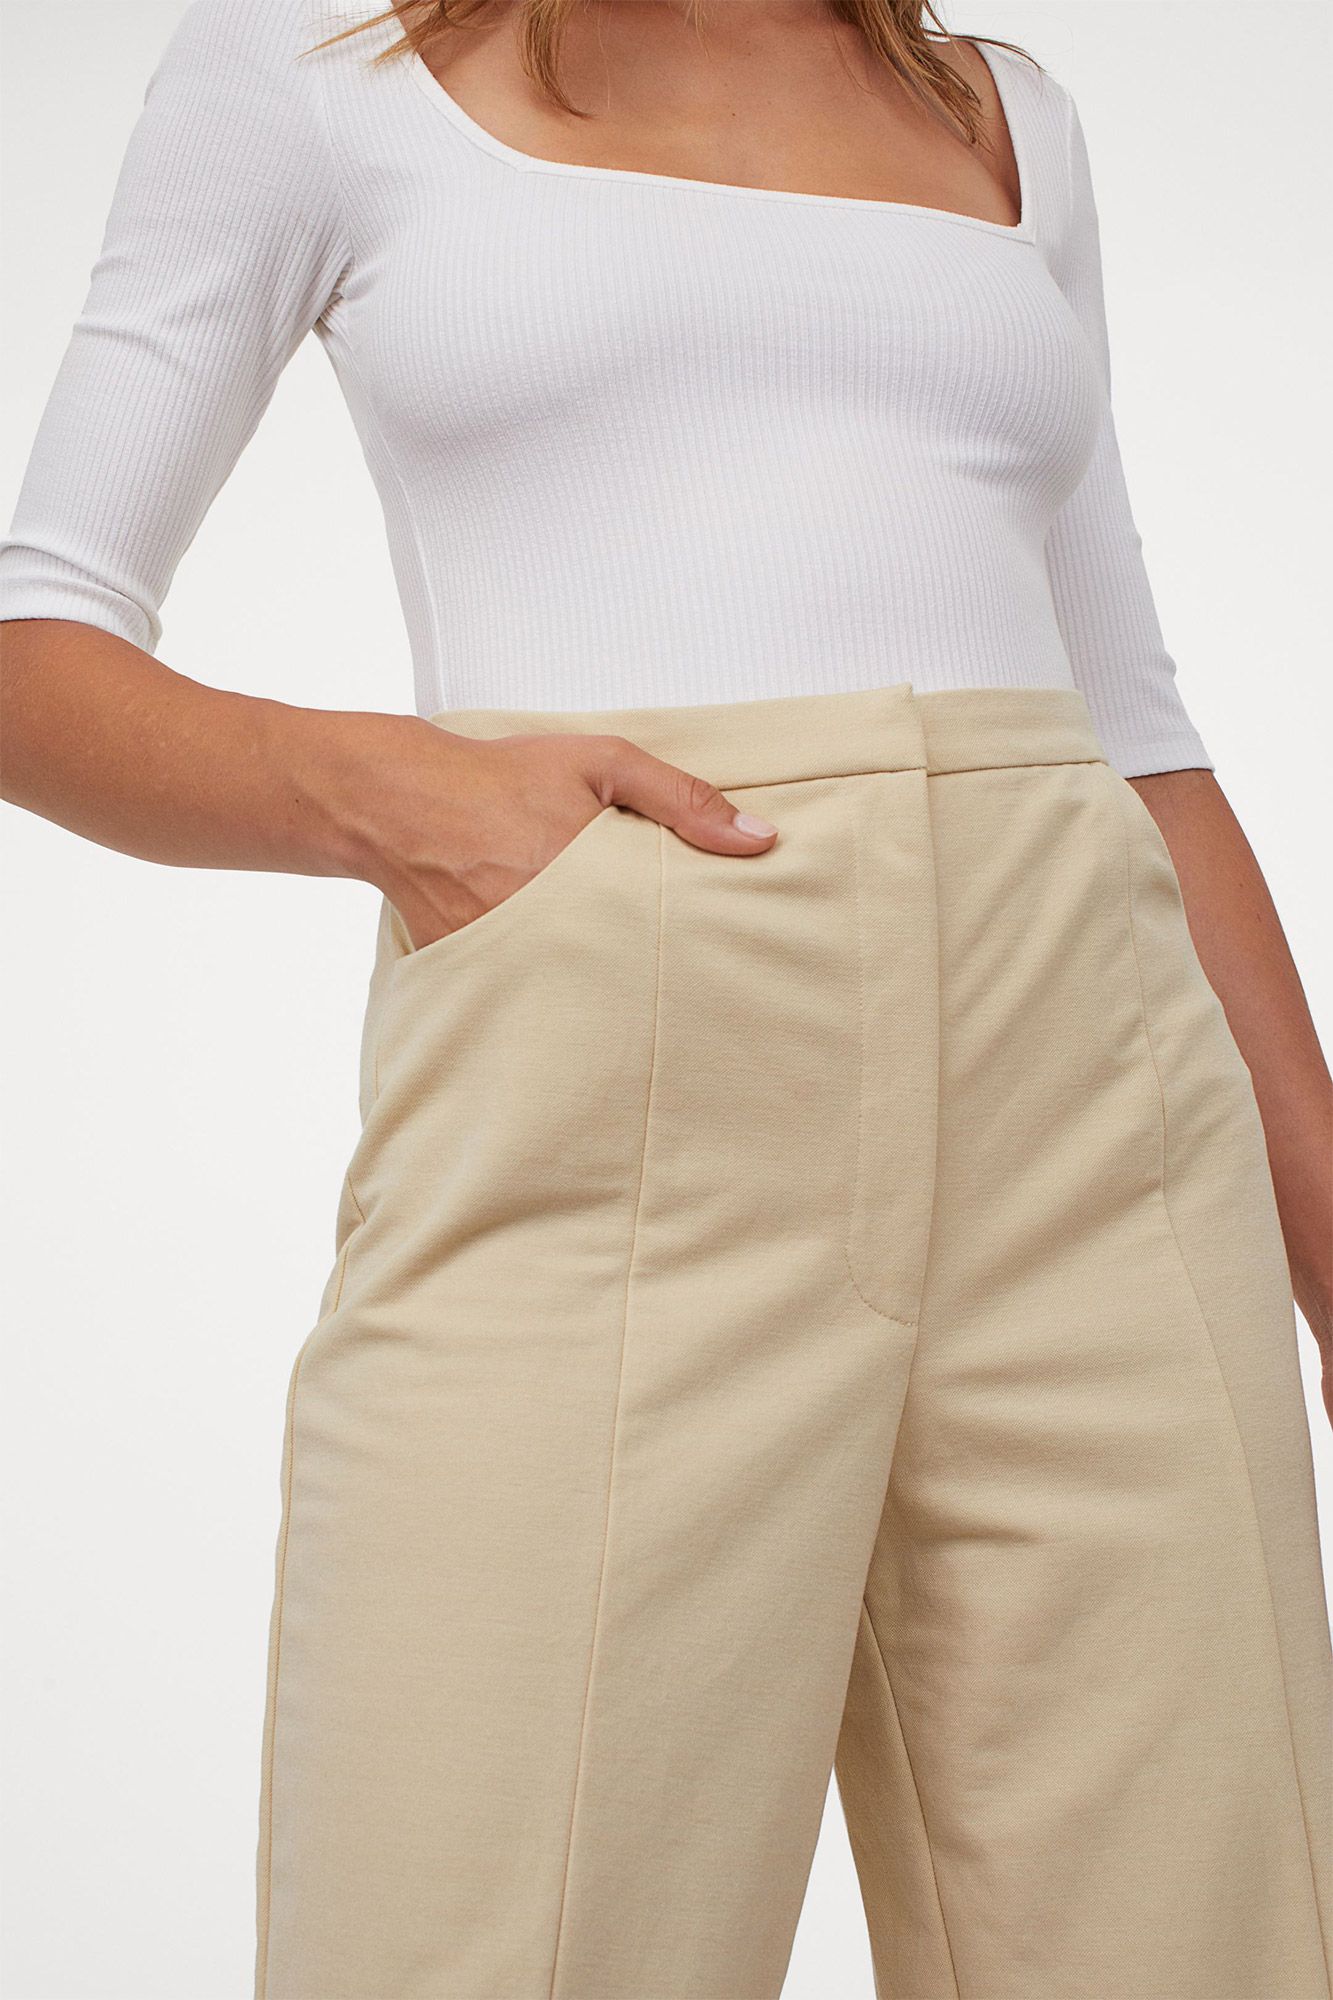 pantalón ancho de H&M pura tendencia entretiempo